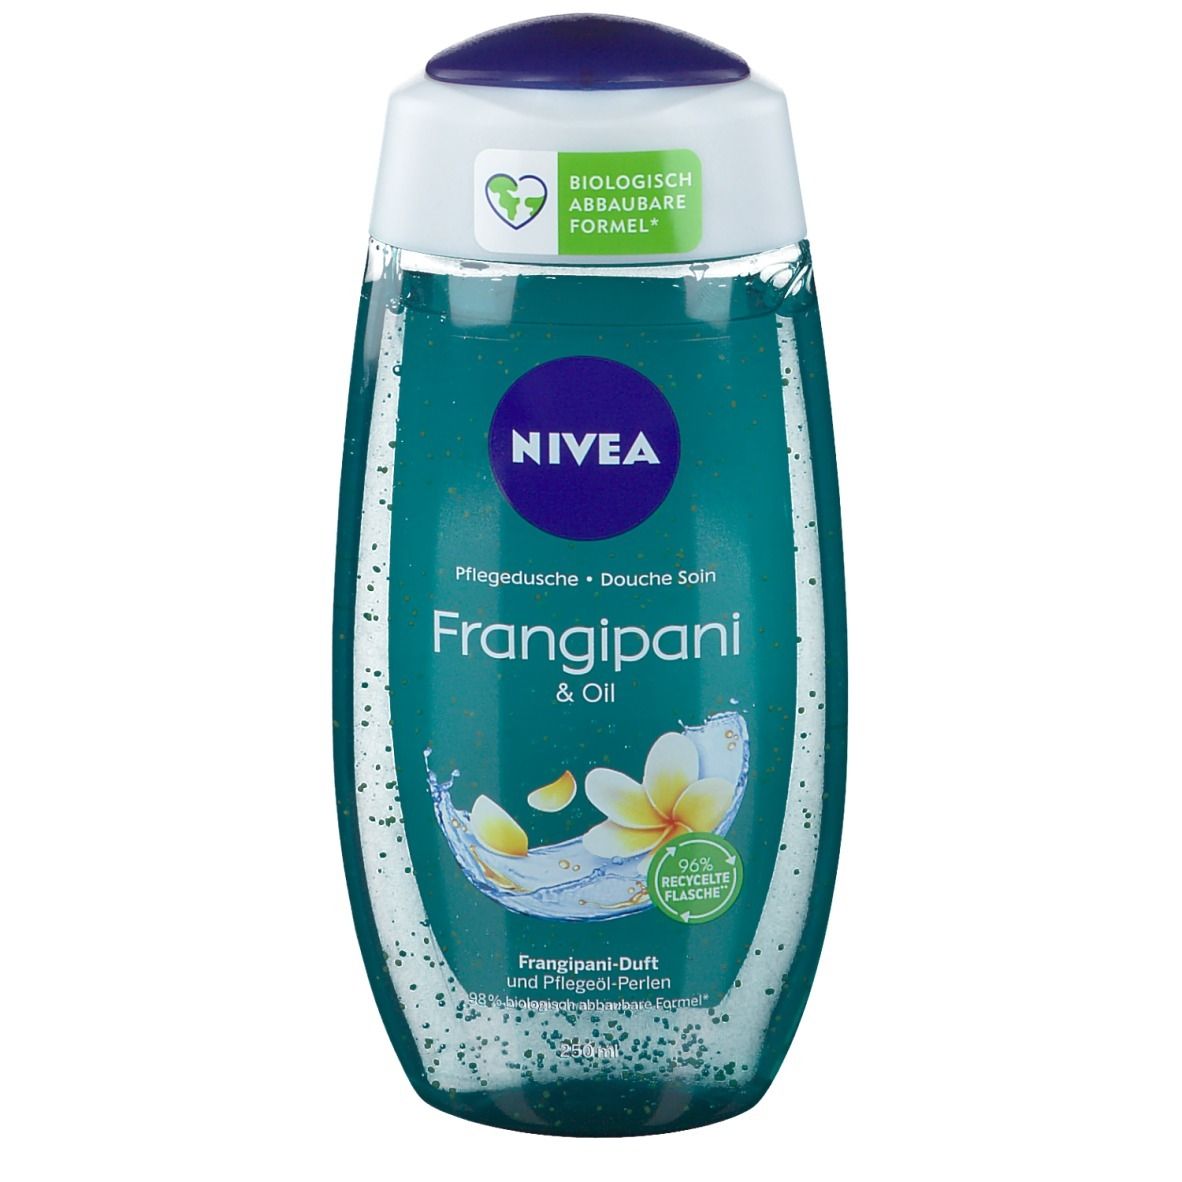 NIVEA® Frangipani & Oil Pflegedusche